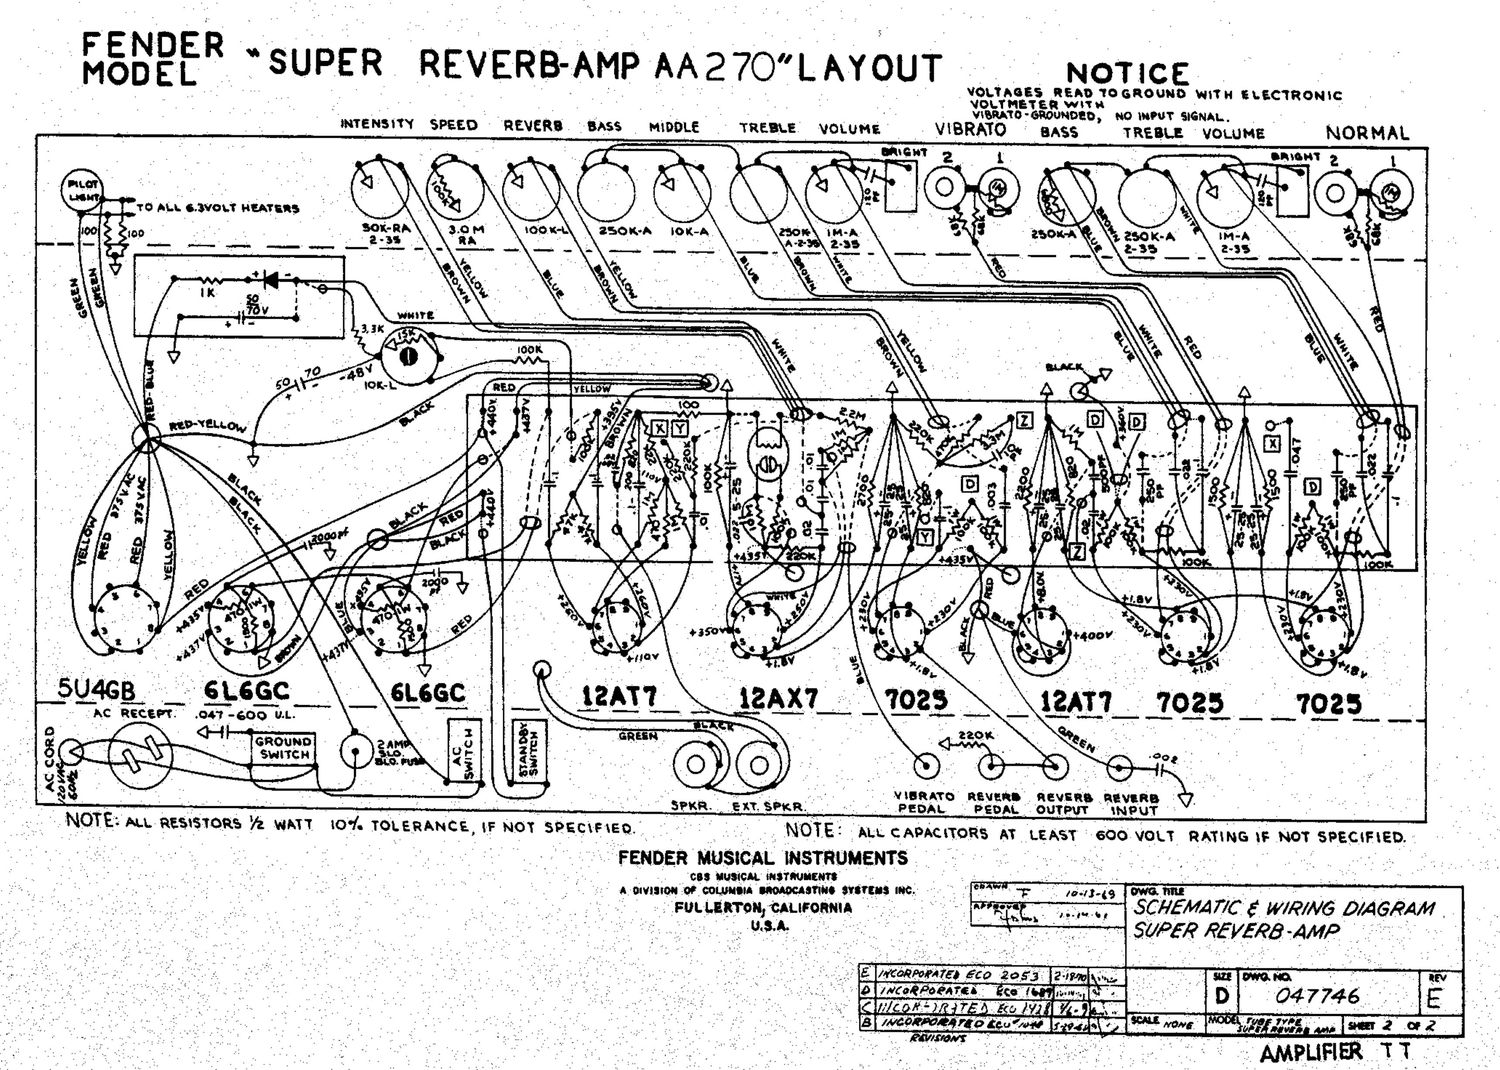 fender super reverb aa270 layout schematic